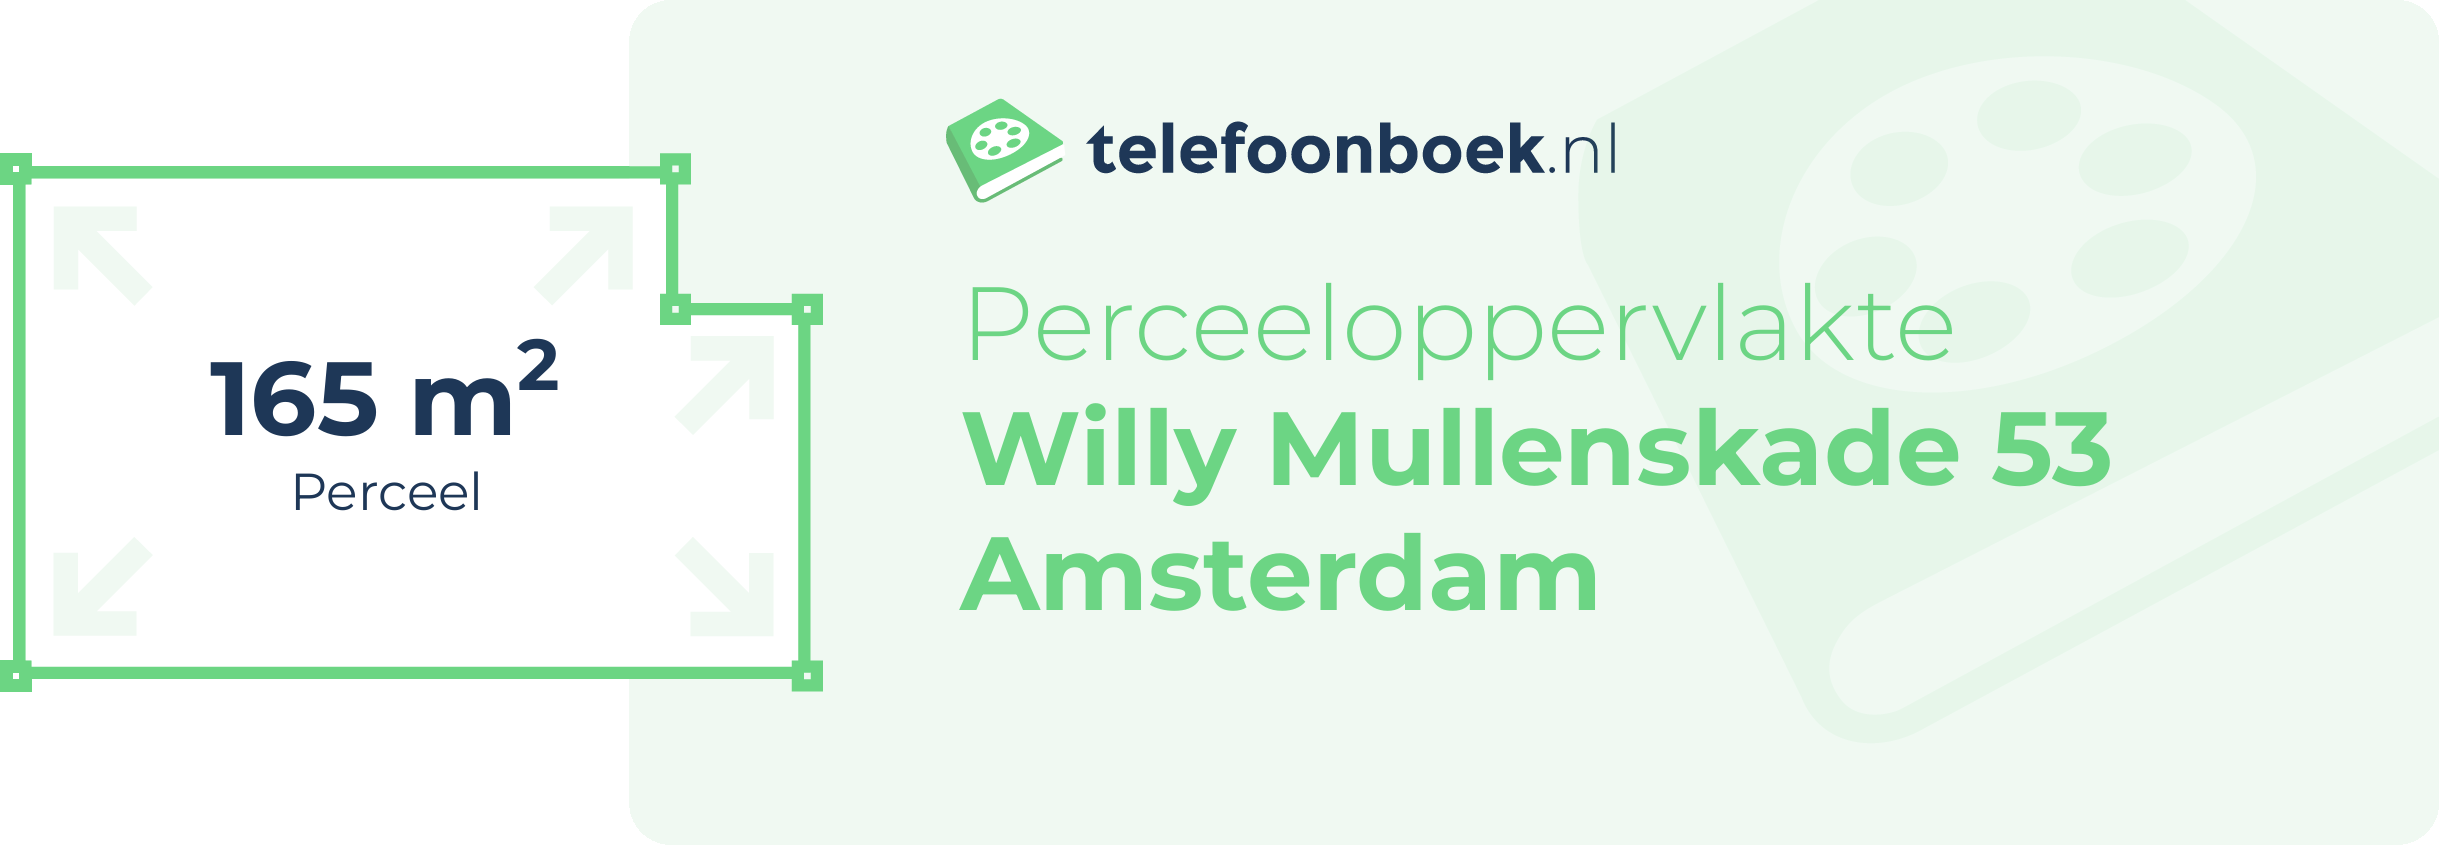 Perceeloppervlakte Willy Mullenskade 53 Amsterdam